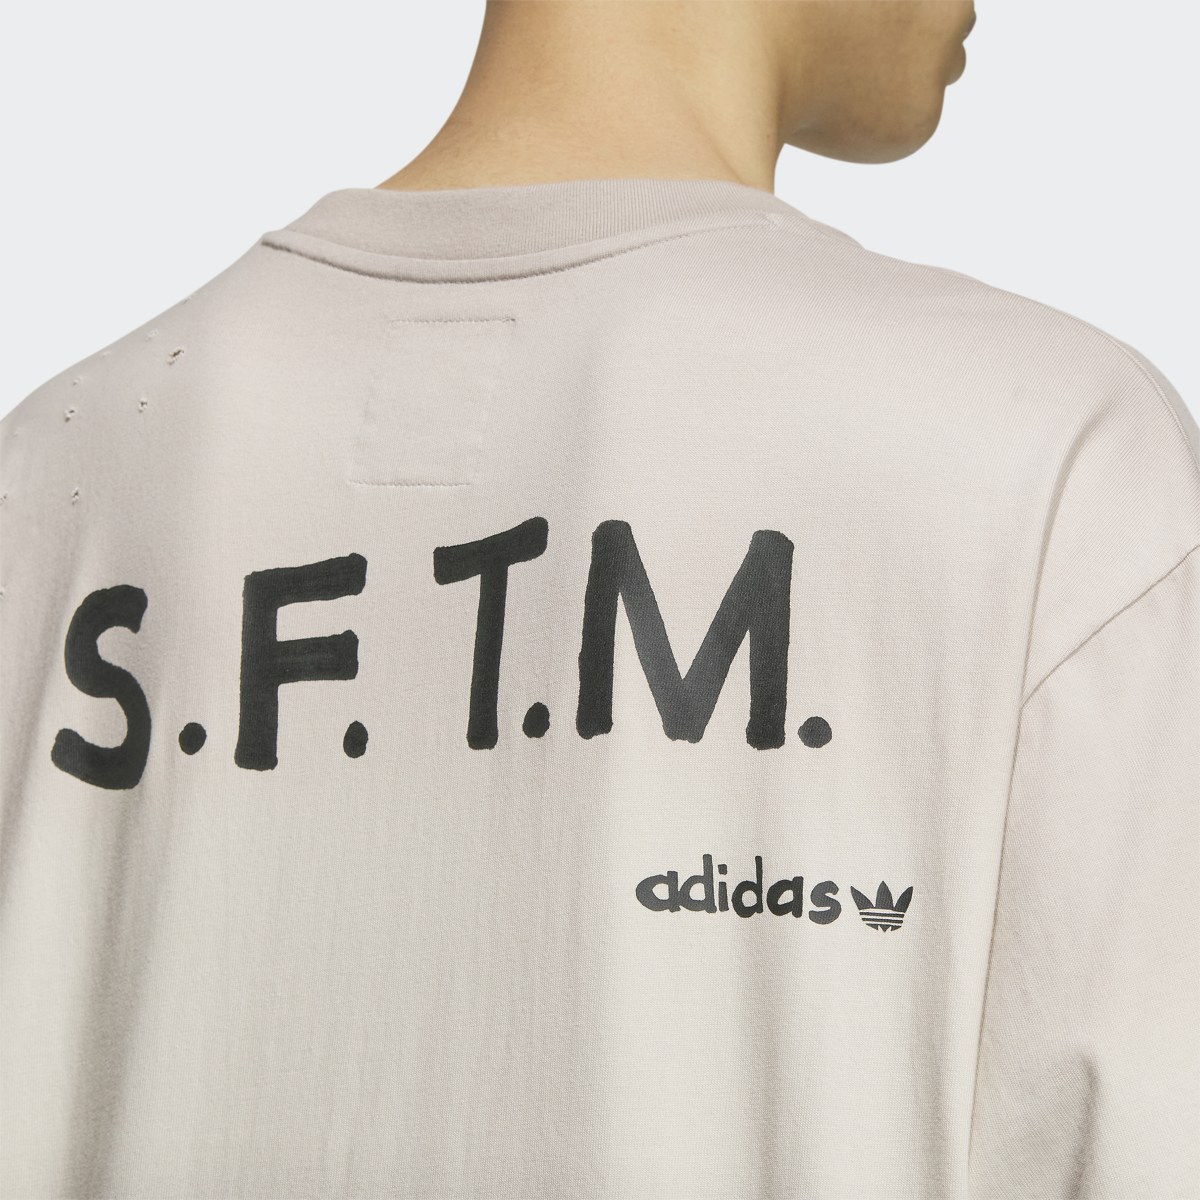 Adidas SFTM Short Sleeve Tee (Gender Neutral). 7